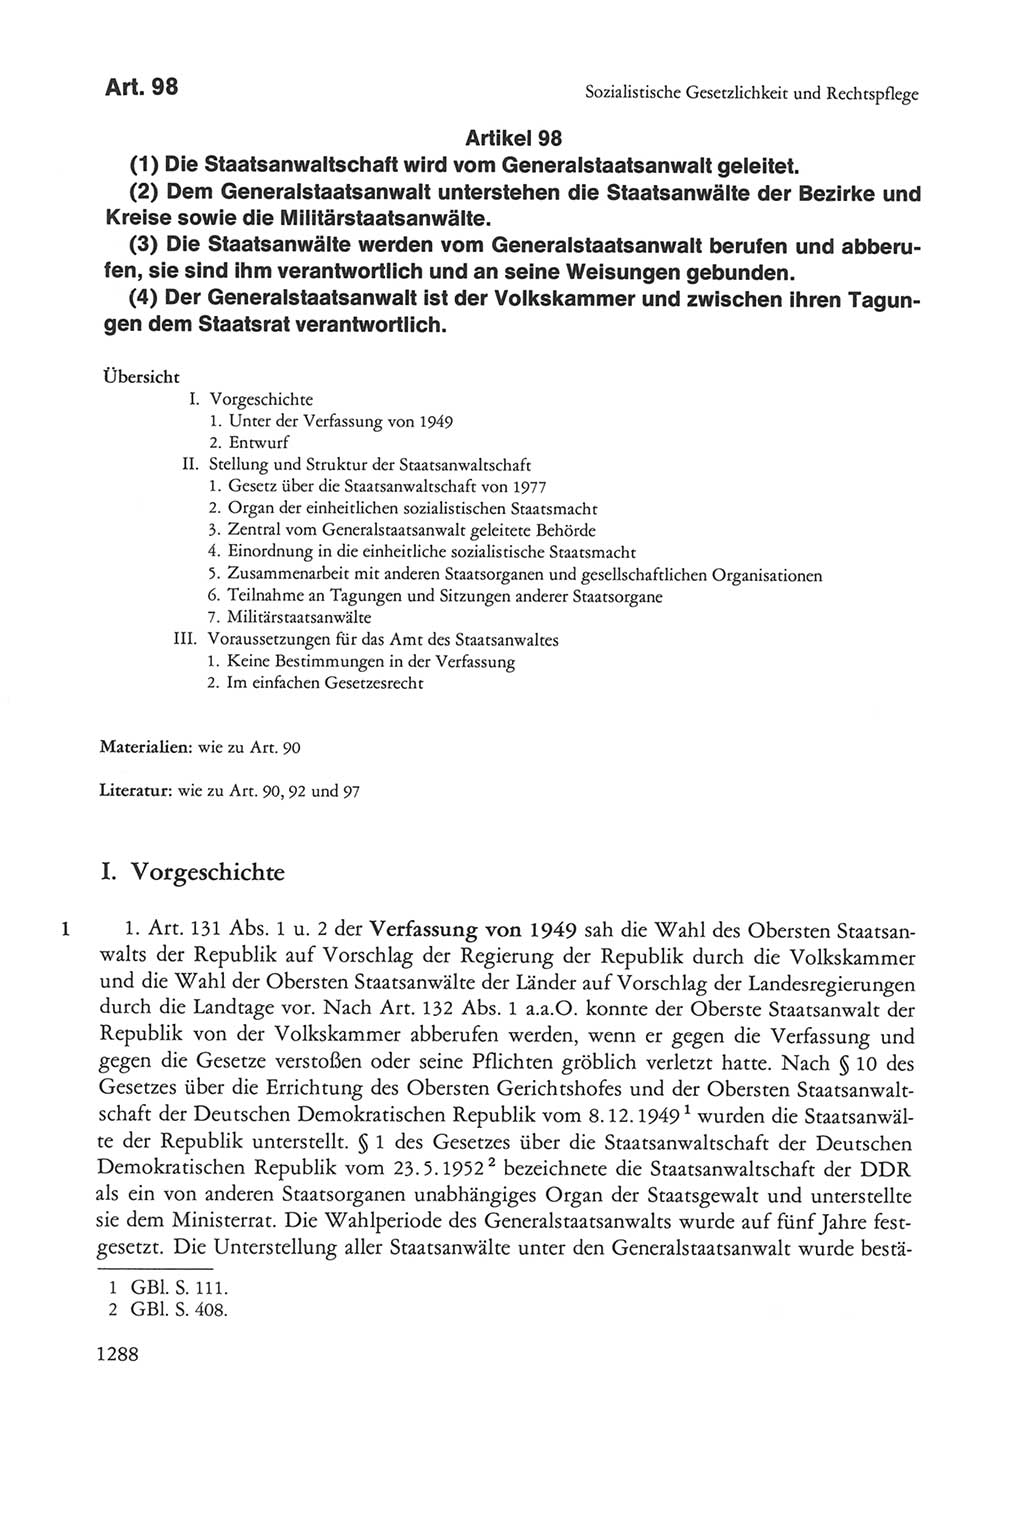 Die sozialistische Verfassung der Deutschen Demokratischen Republik (DDR), Kommentar 1982, Seite 1288 (Soz. Verf. DDR Komm. 1982, S. 1288)